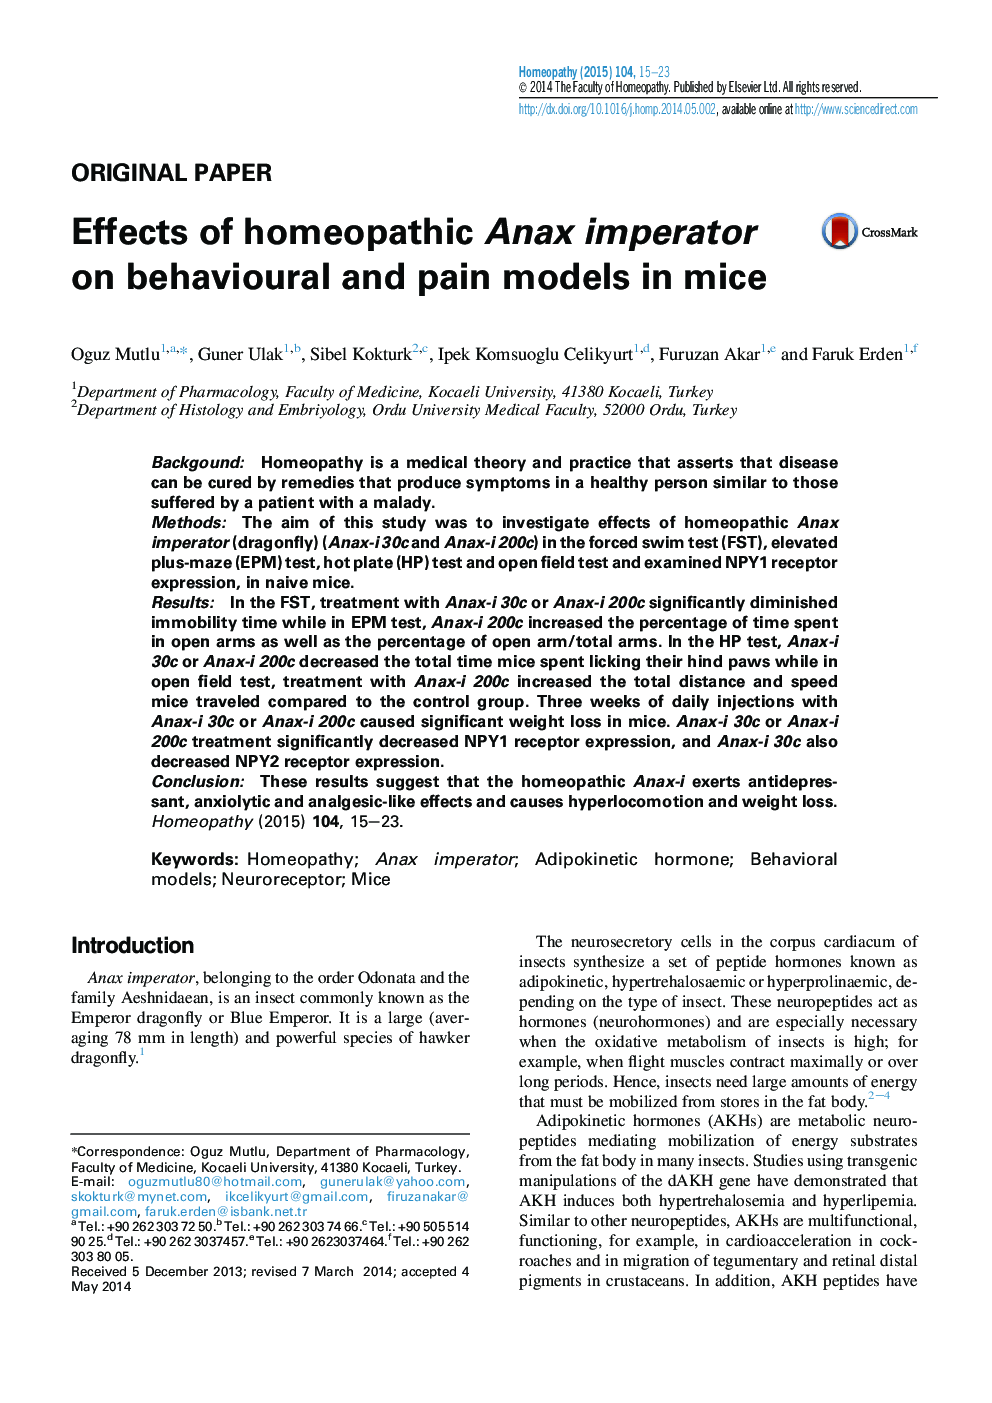 اثر امپراتور Anax هومیوپاتی در مدل های رفتاری و درد در موش